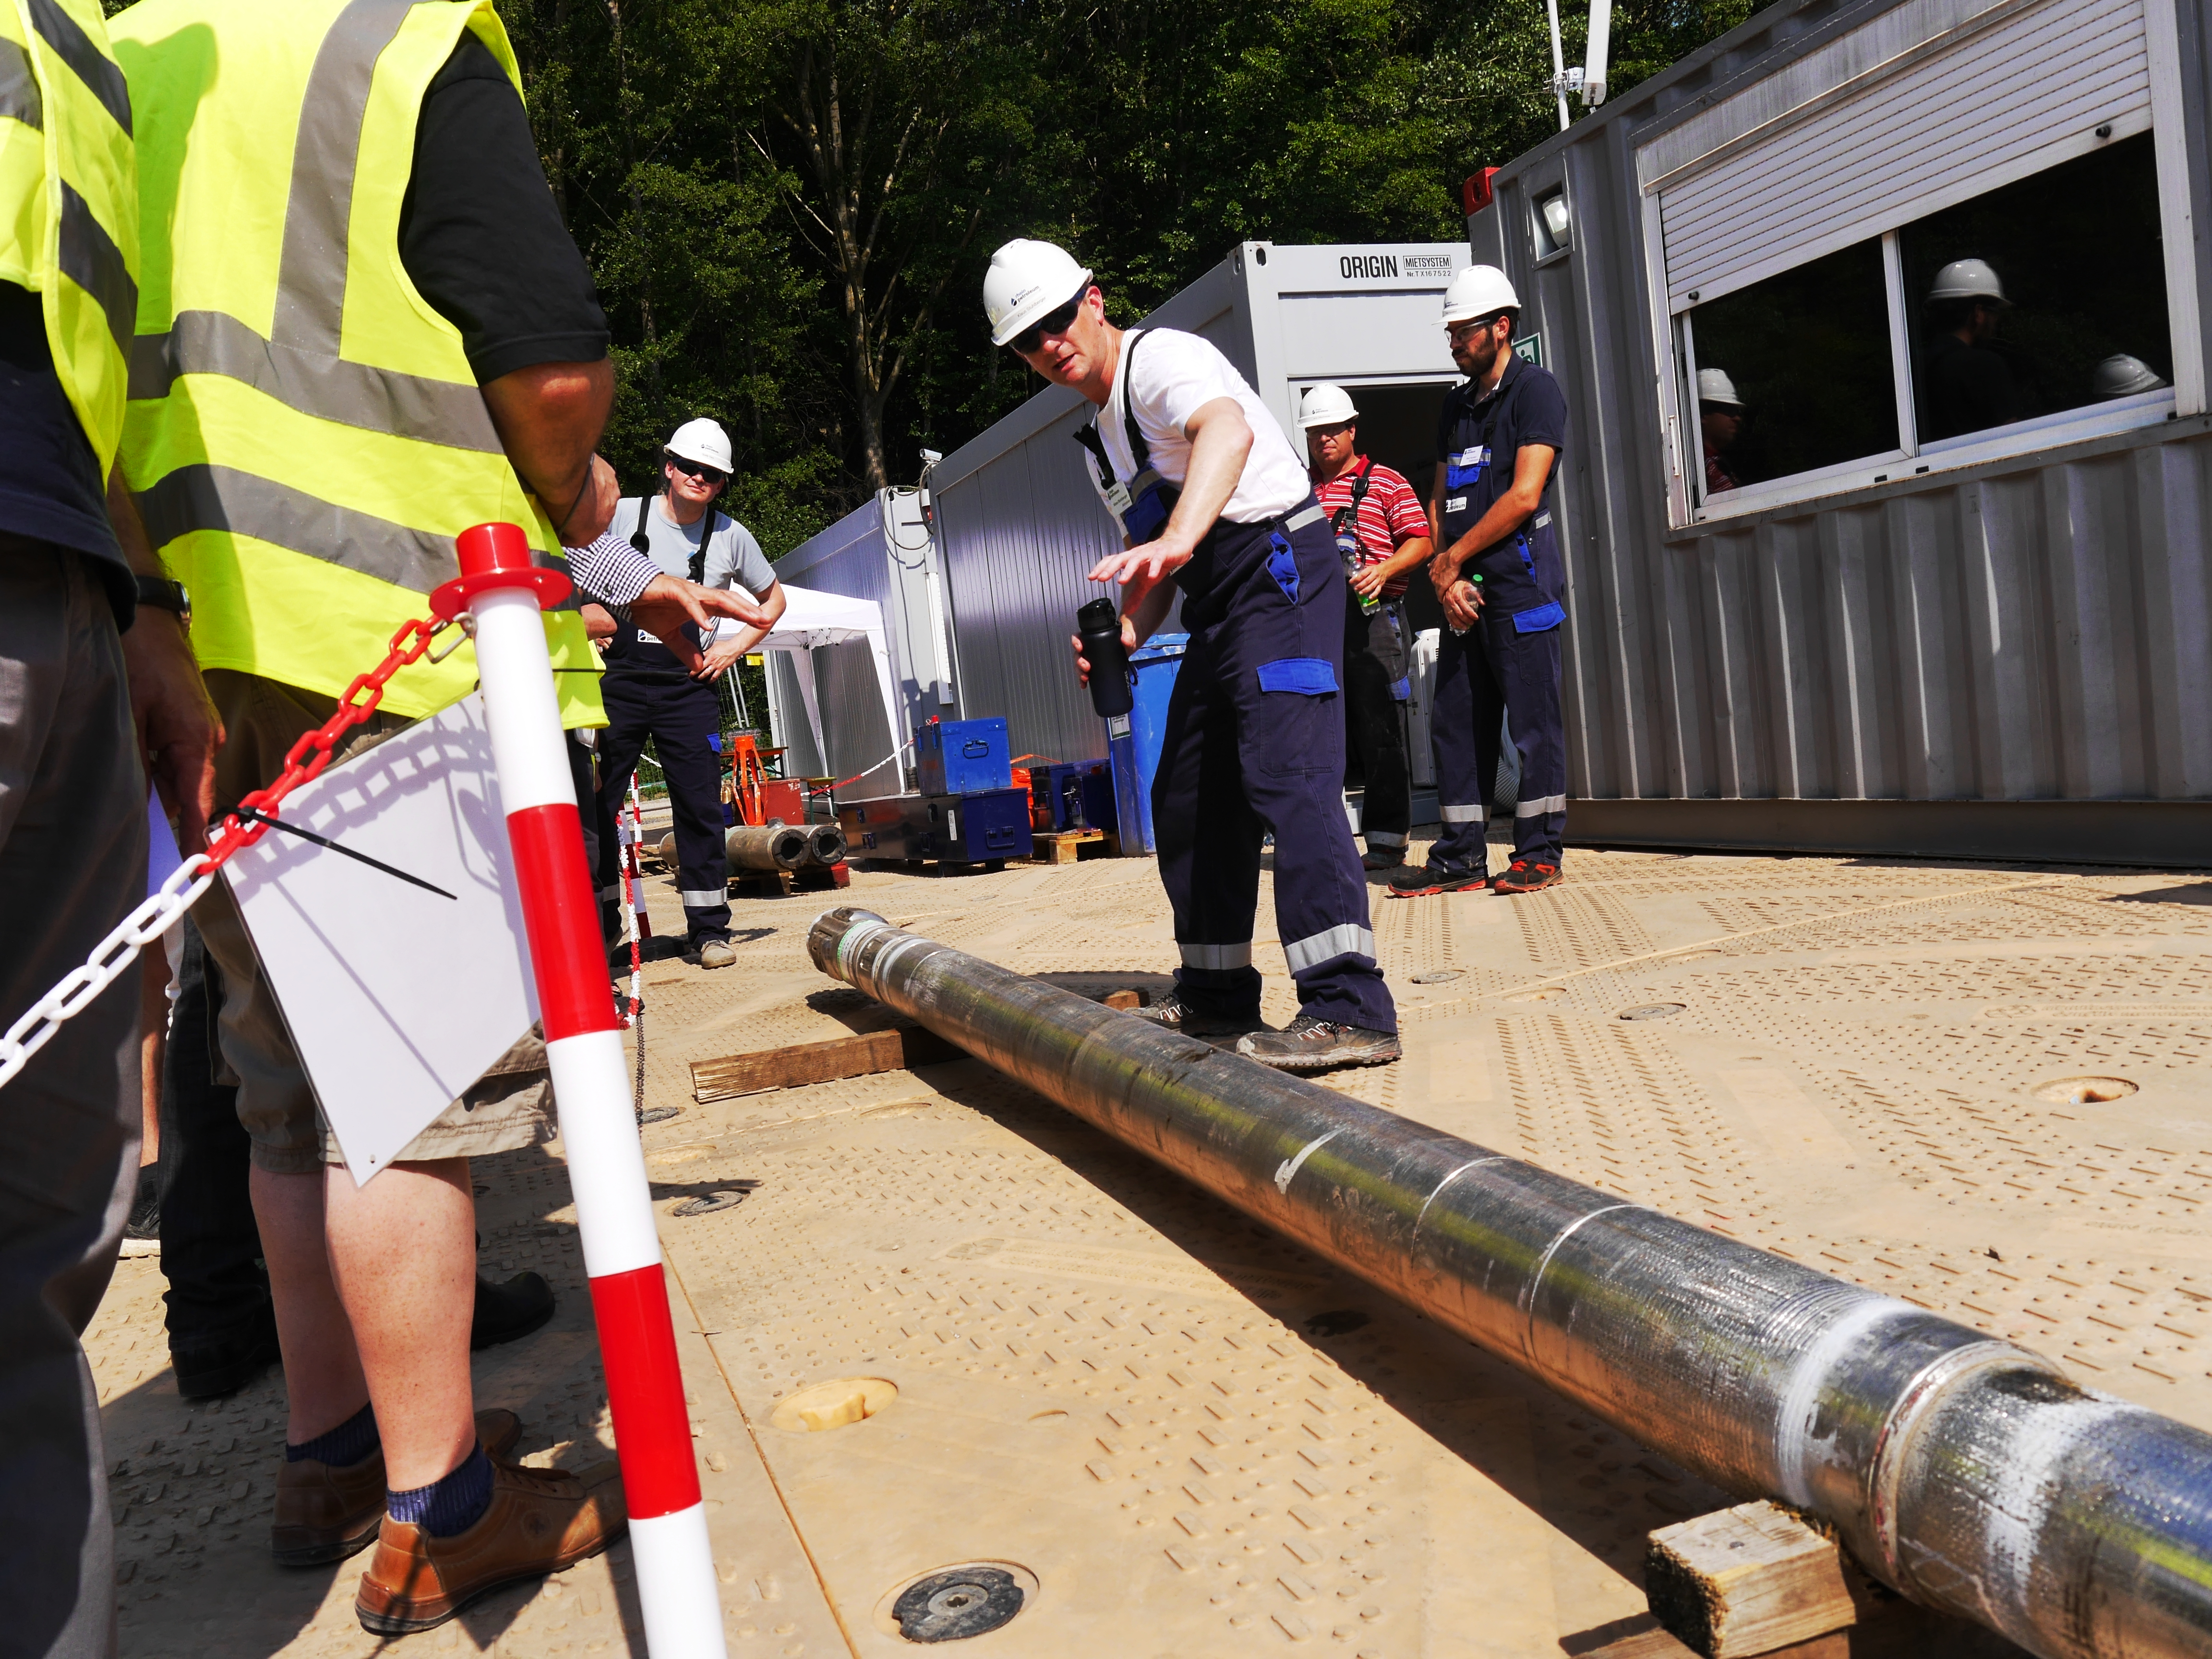  Besuchertag Bohranlage - Rhein Petroleum informiert die Gruppe und beantwortet Fragen 